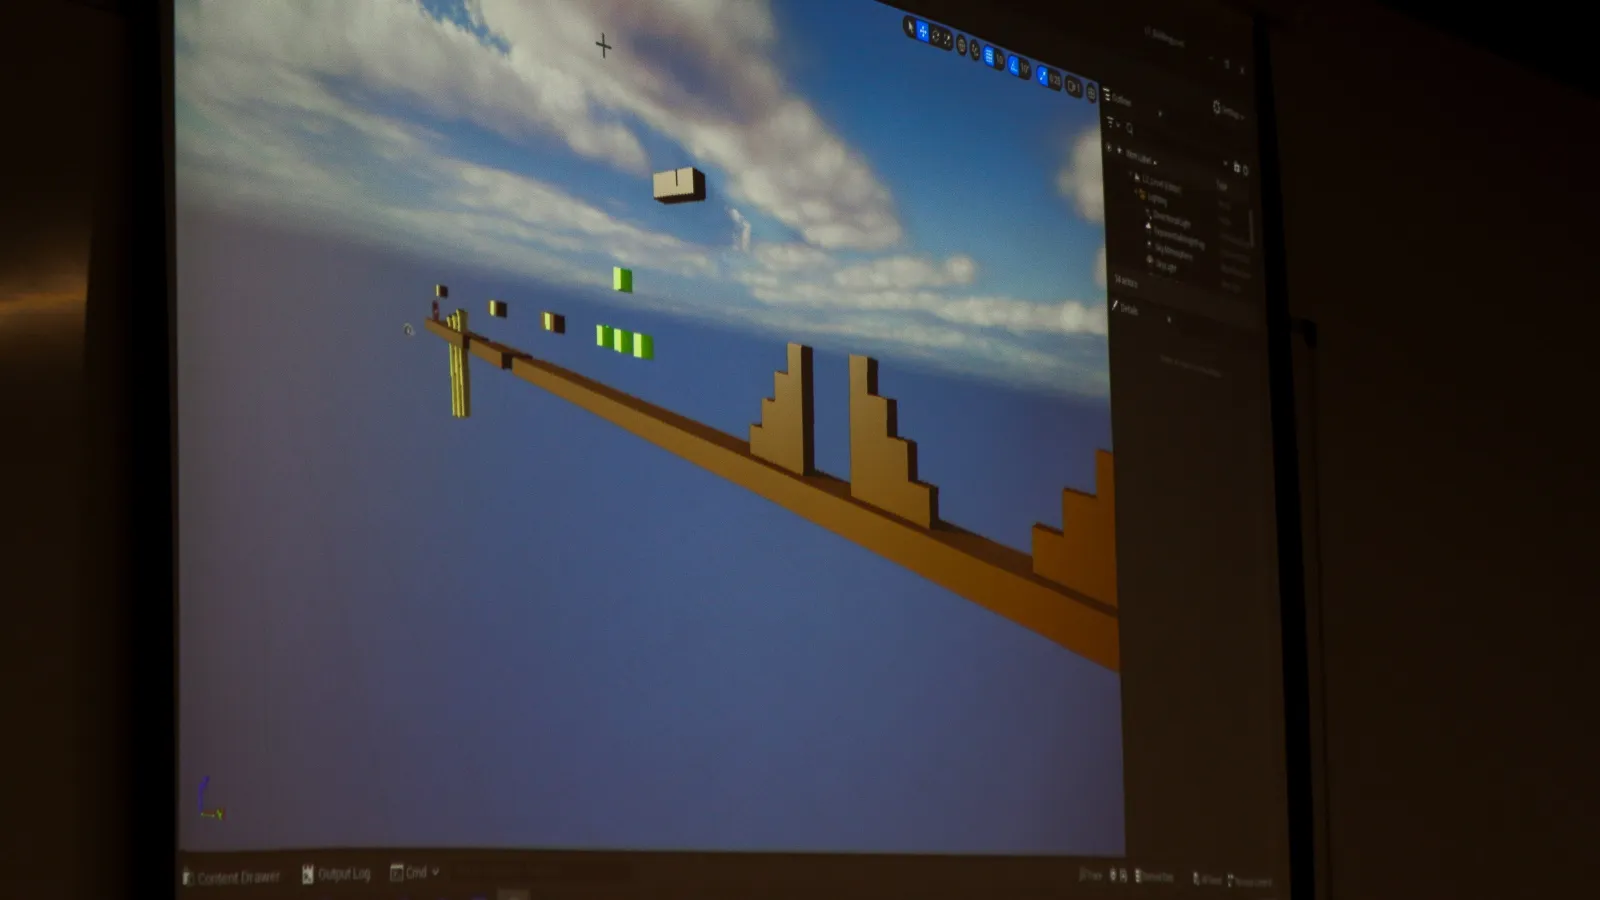 Una gran pantalla muestra el ejemplo utilizado por el instructor sobre cómo crear un entorno de juego simple, con diferentes obstáculos y plataformas, en el editor de Unreal Engine.